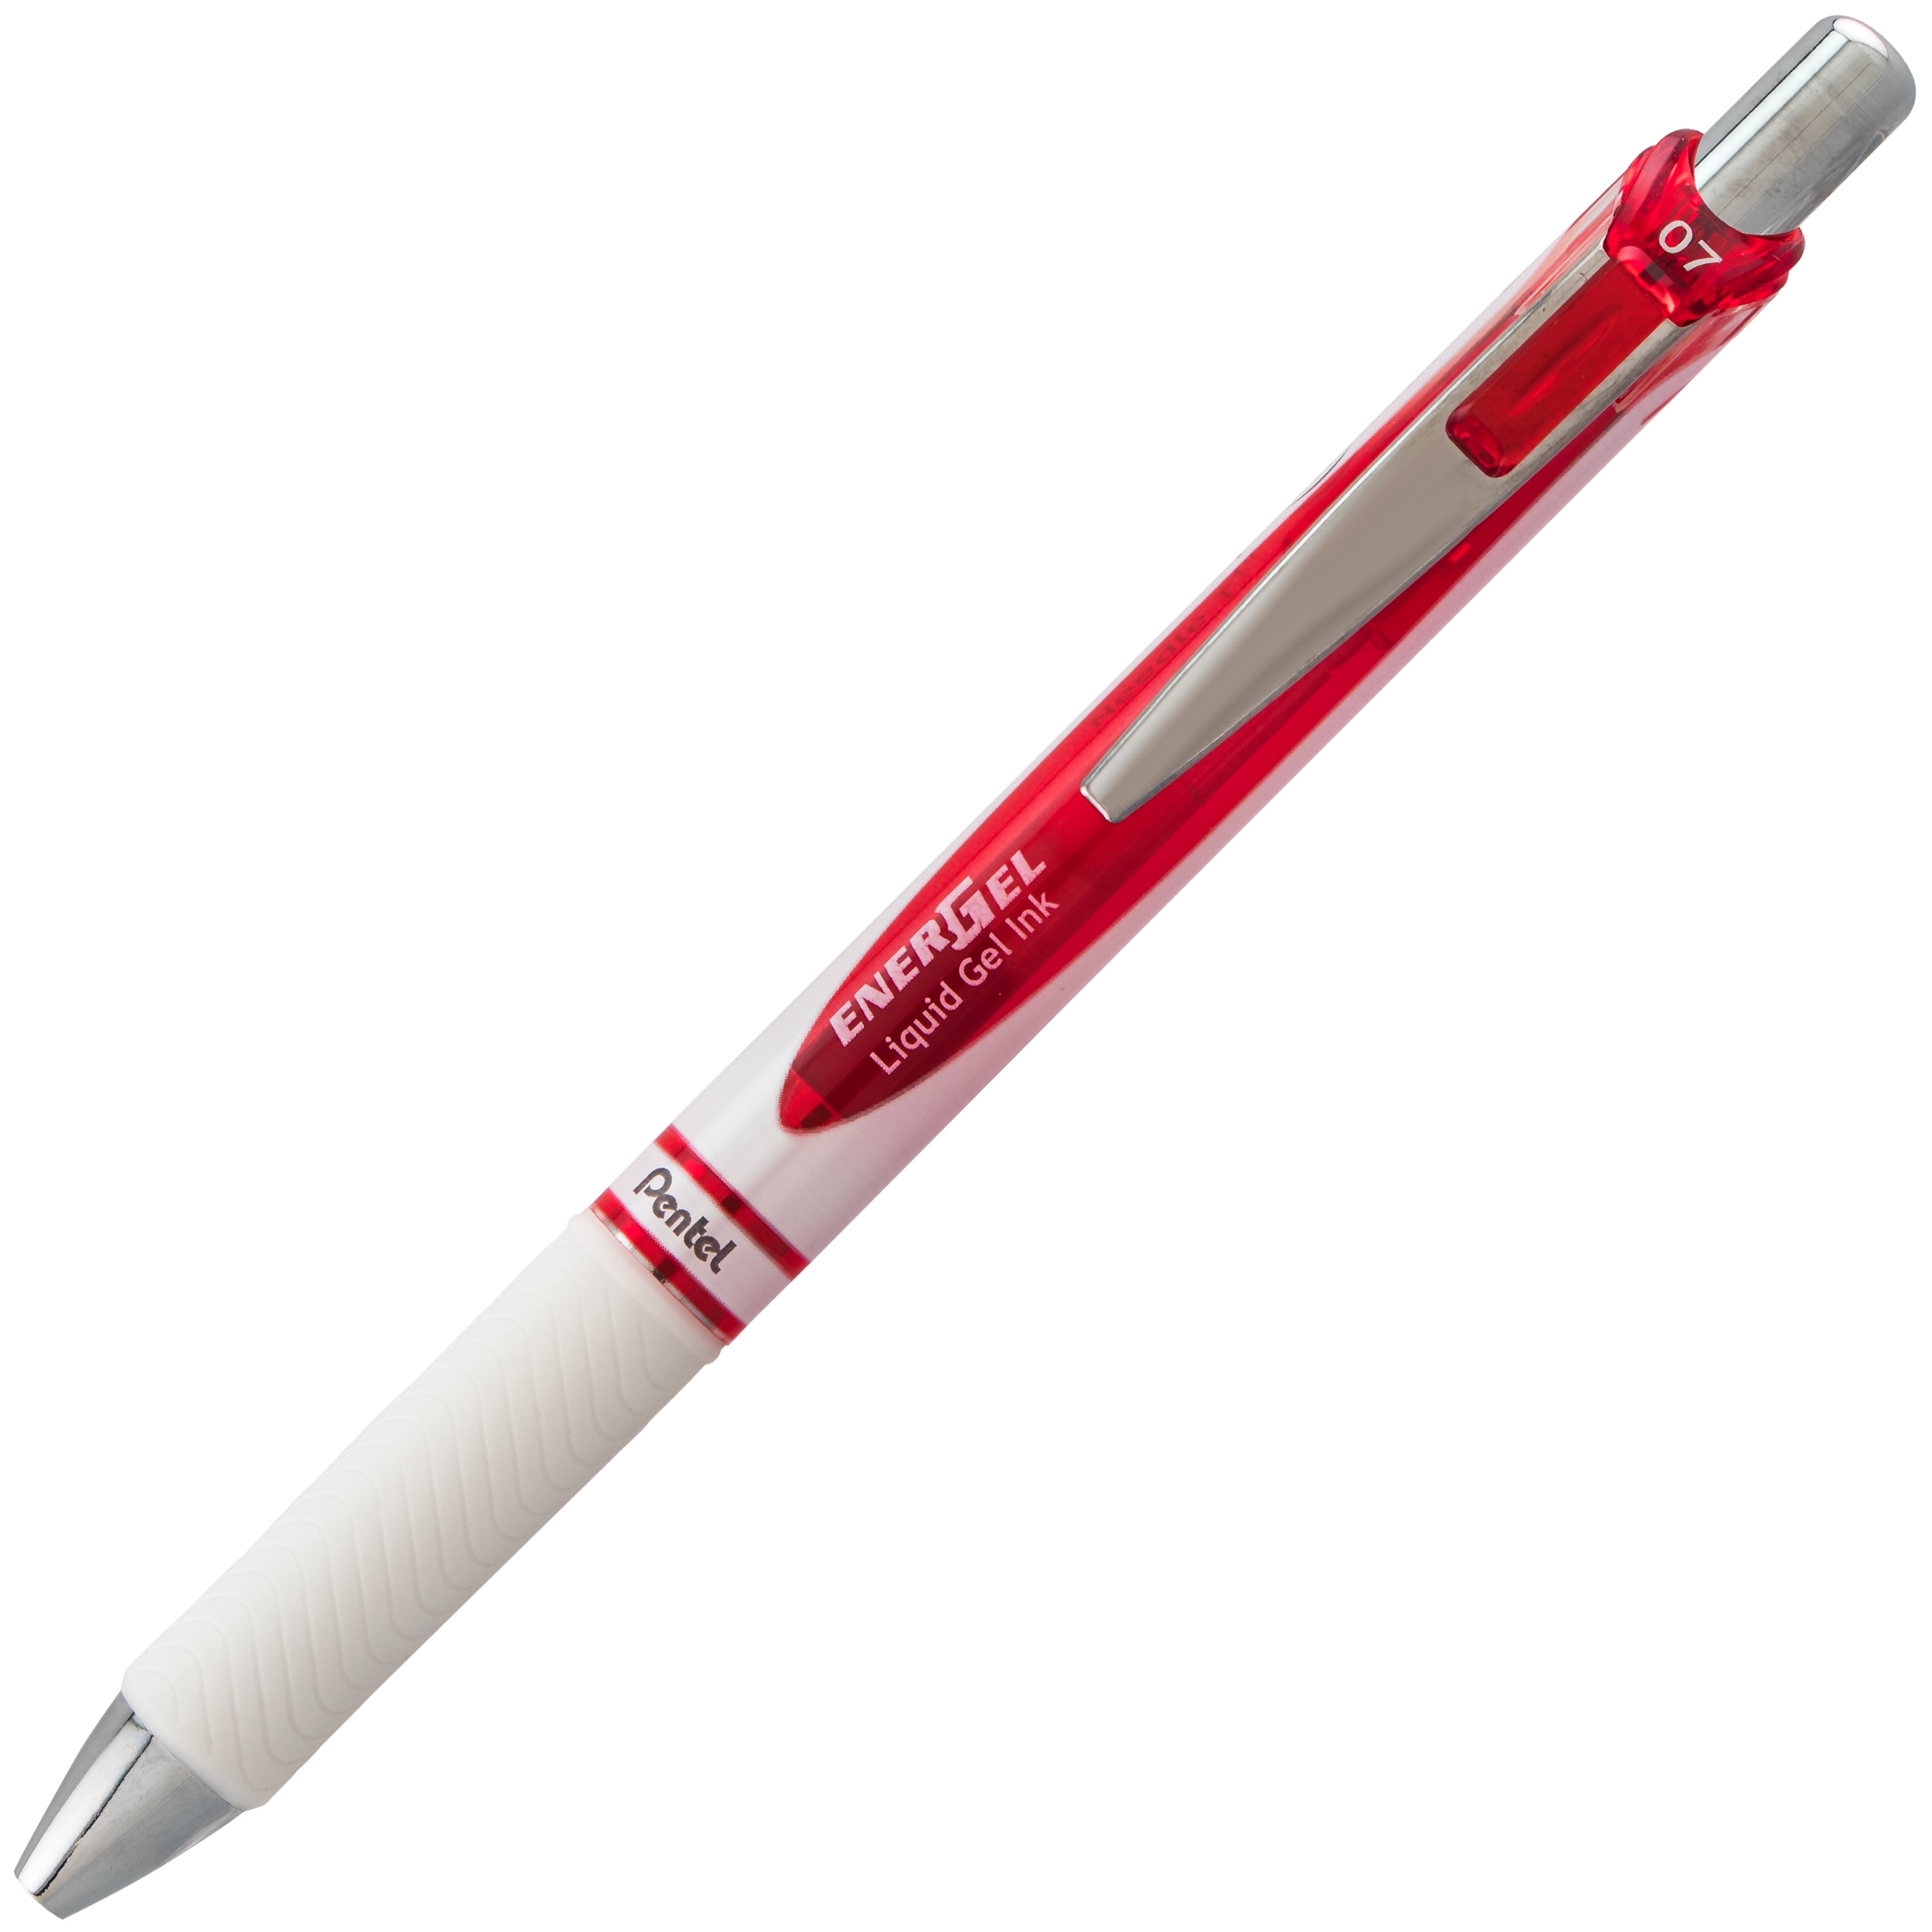 Pentel Energel Pearl Gel Pen, 0.7mm Medium, Needle Tip, Assorted Ink, 4 Pack